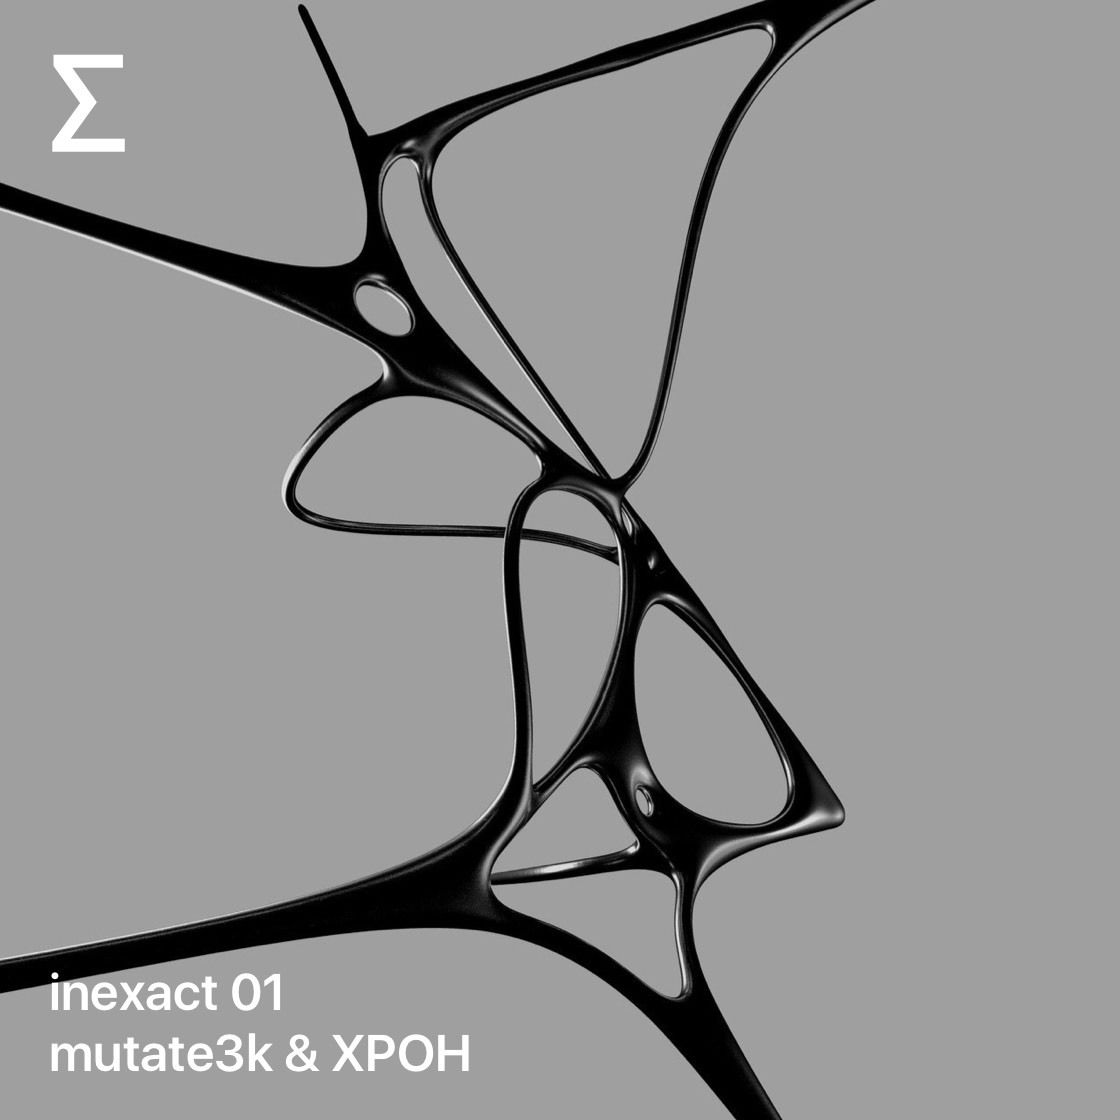 inexact 01 – mutate3k & XPOH